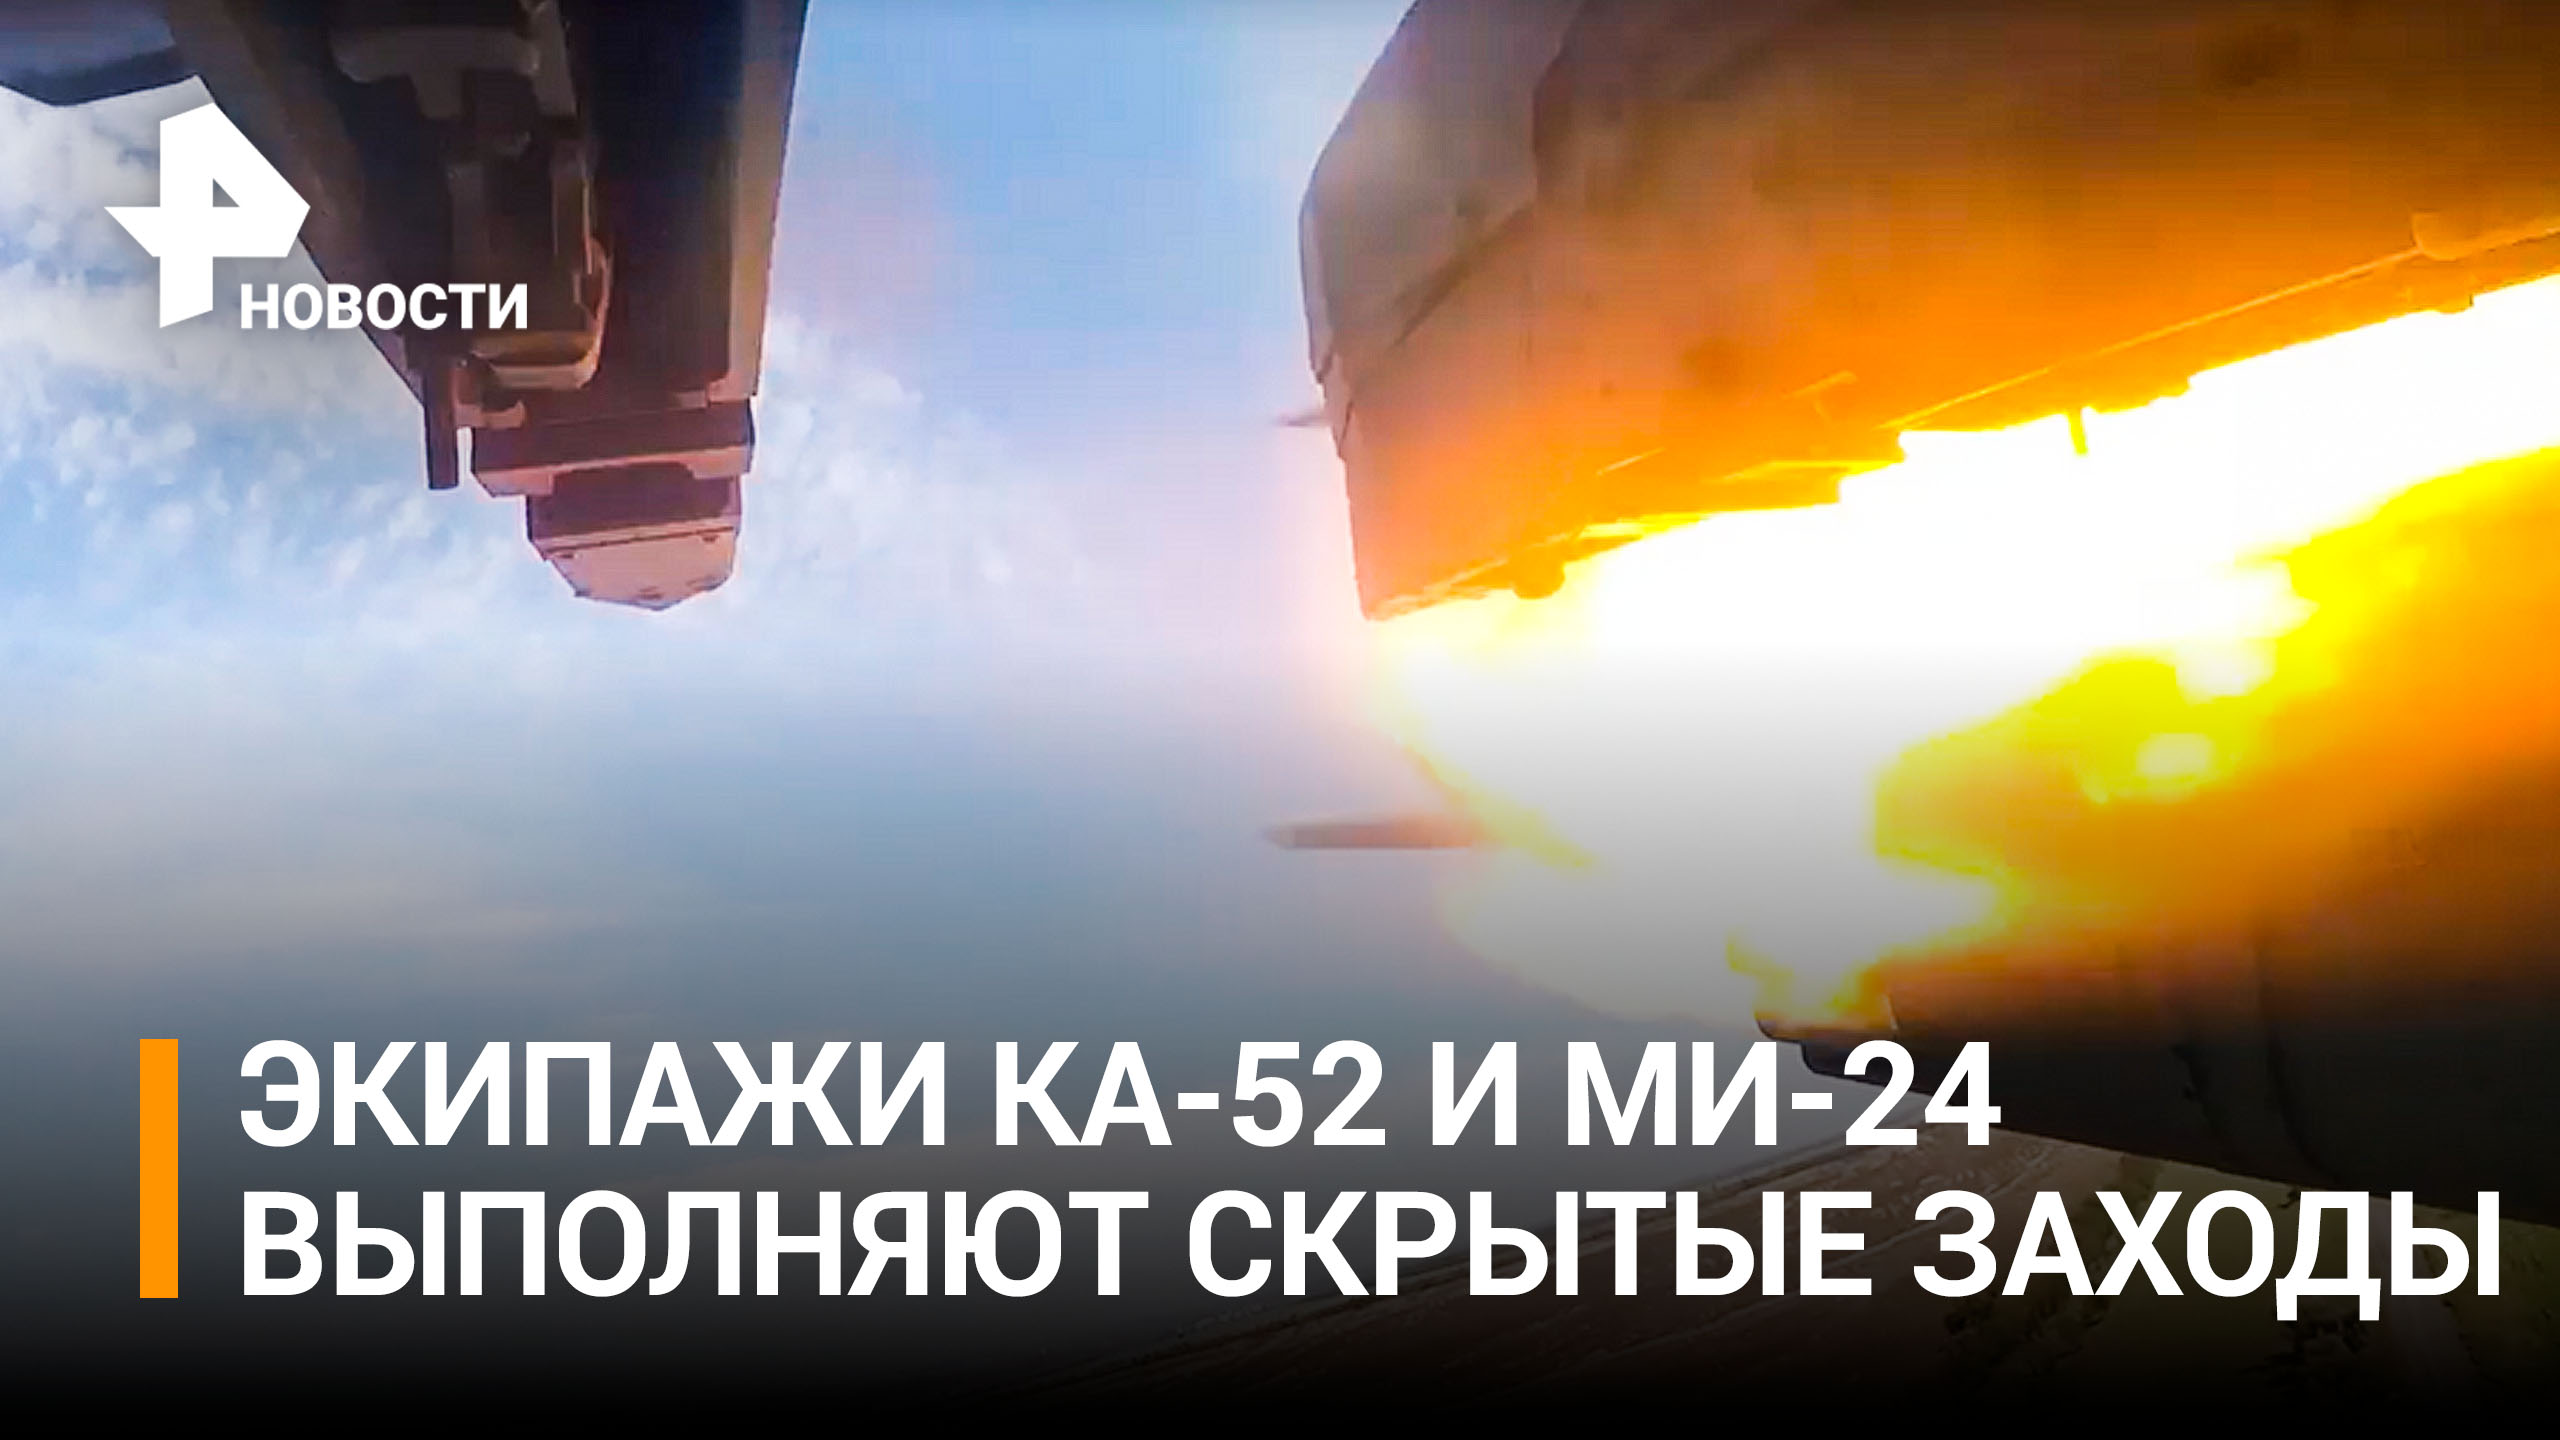 Вертолеты Ка-52 и Ми-24 уничтожили позиции ВСУ в зоне спецоперации / РЕН Новости